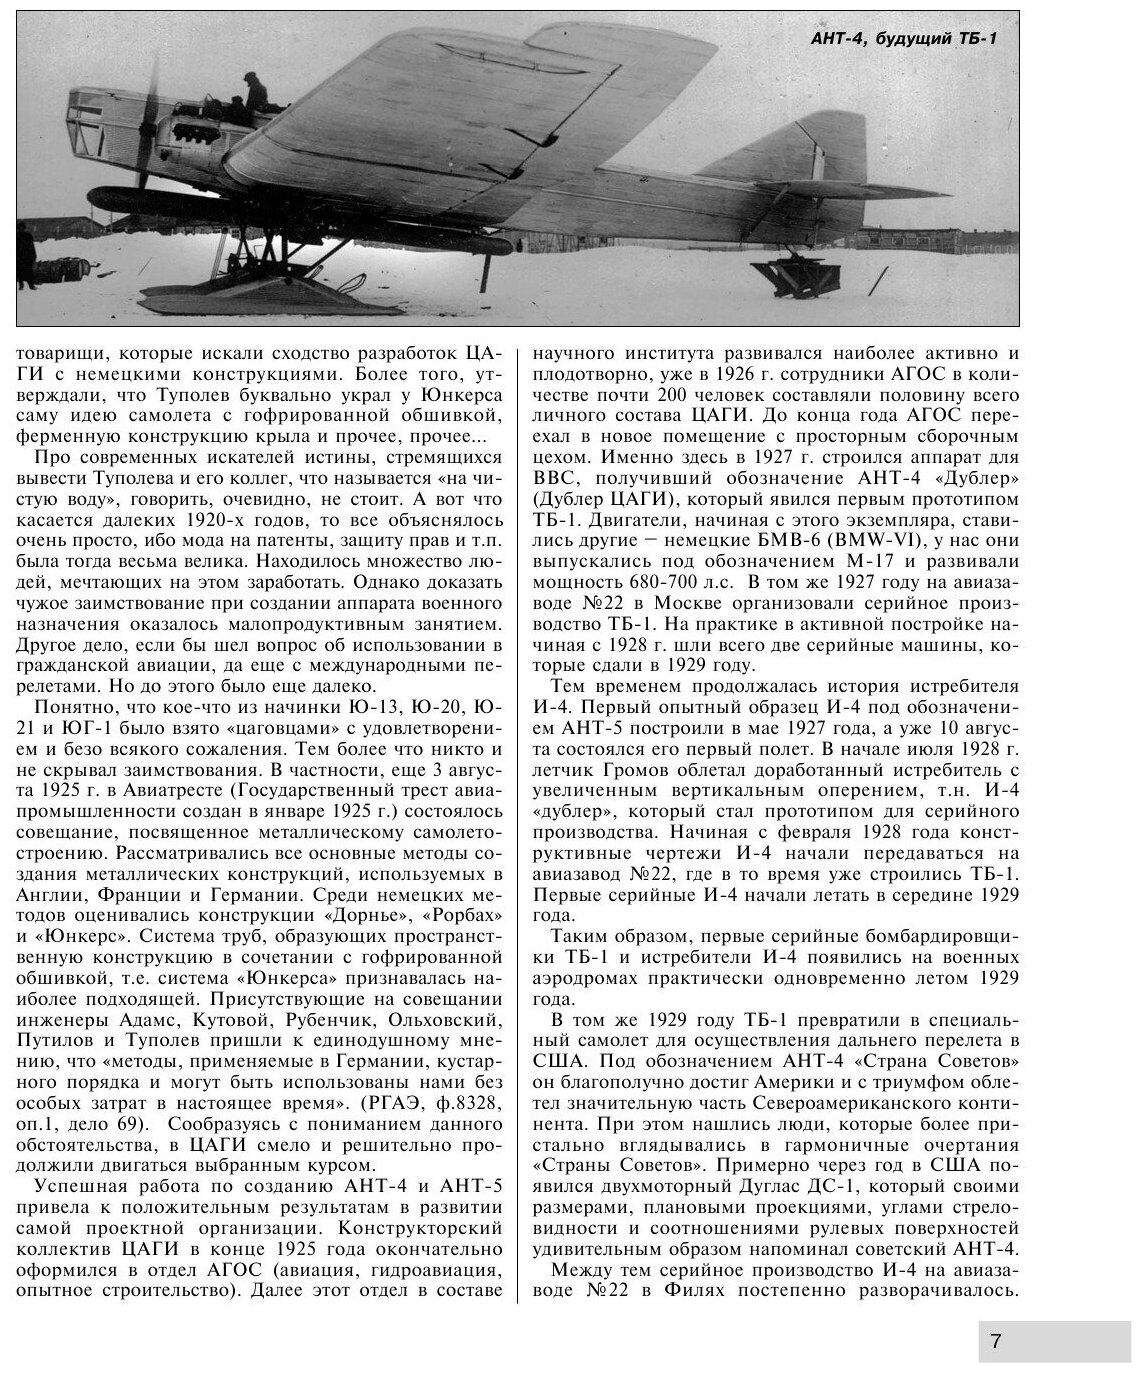 Летающие авианосцы Сталина. Все модификации и проекты «Звена» Вахмистрова - фото №10